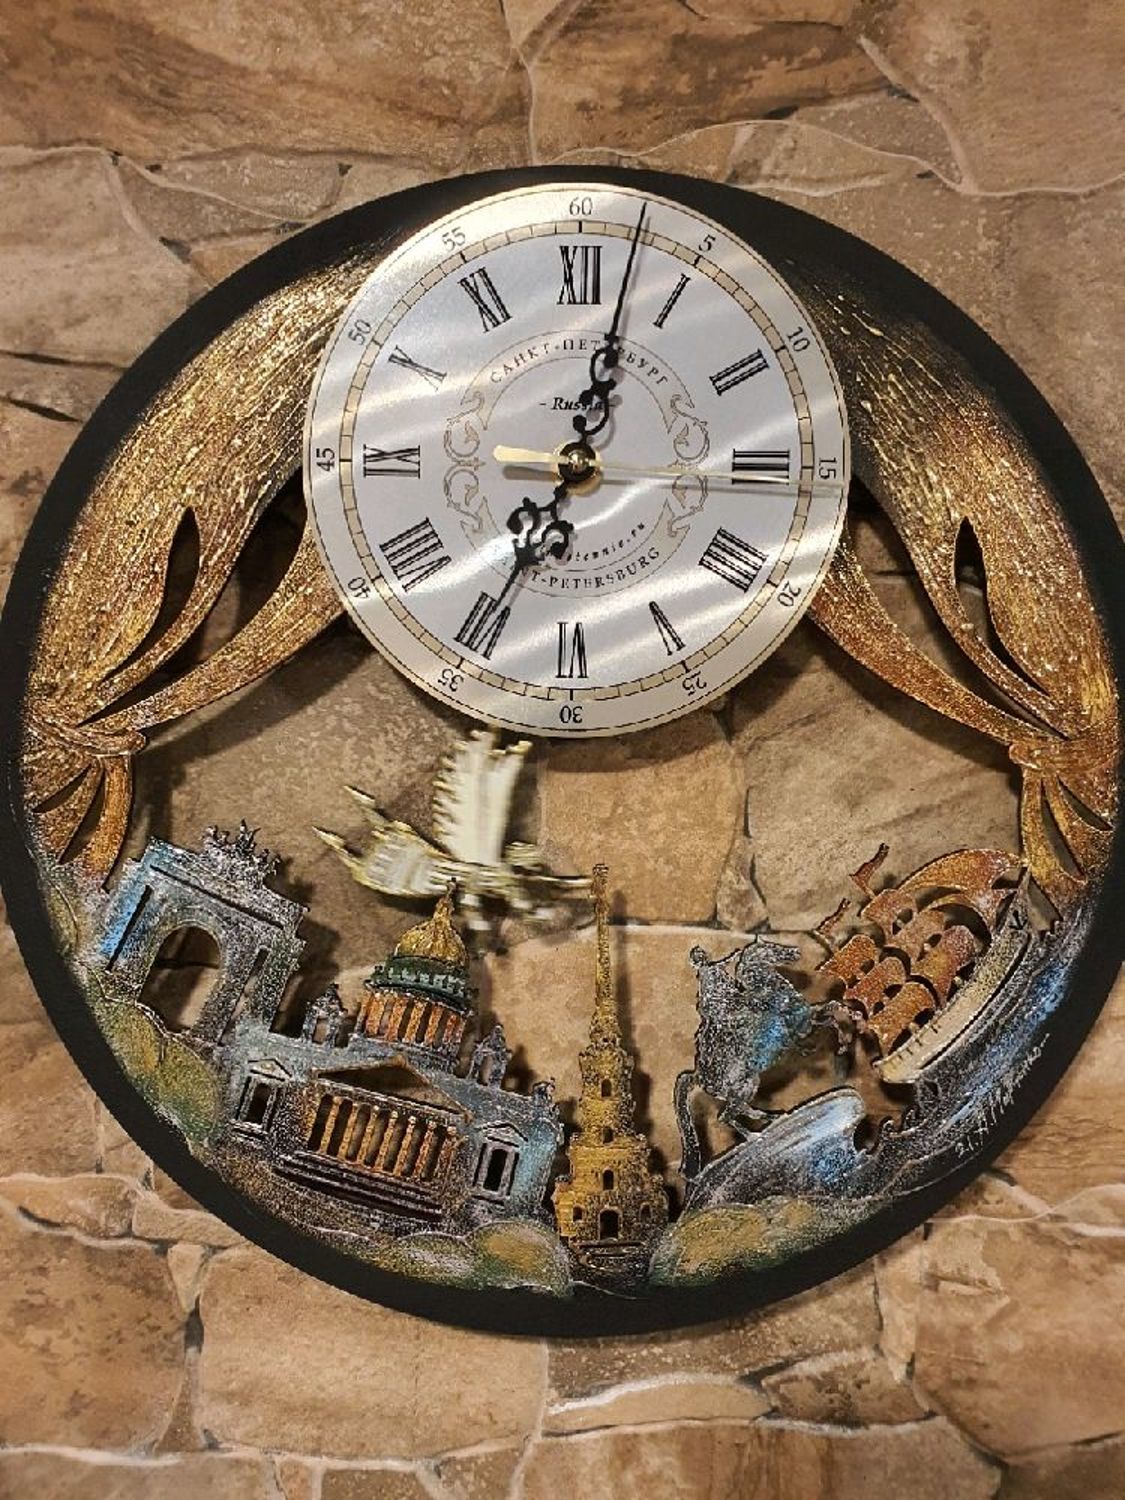 Photo №1 к отзыву покупателя Irina о товаре Подарочные часы город Санкт-Петербург с Алыми Парусами